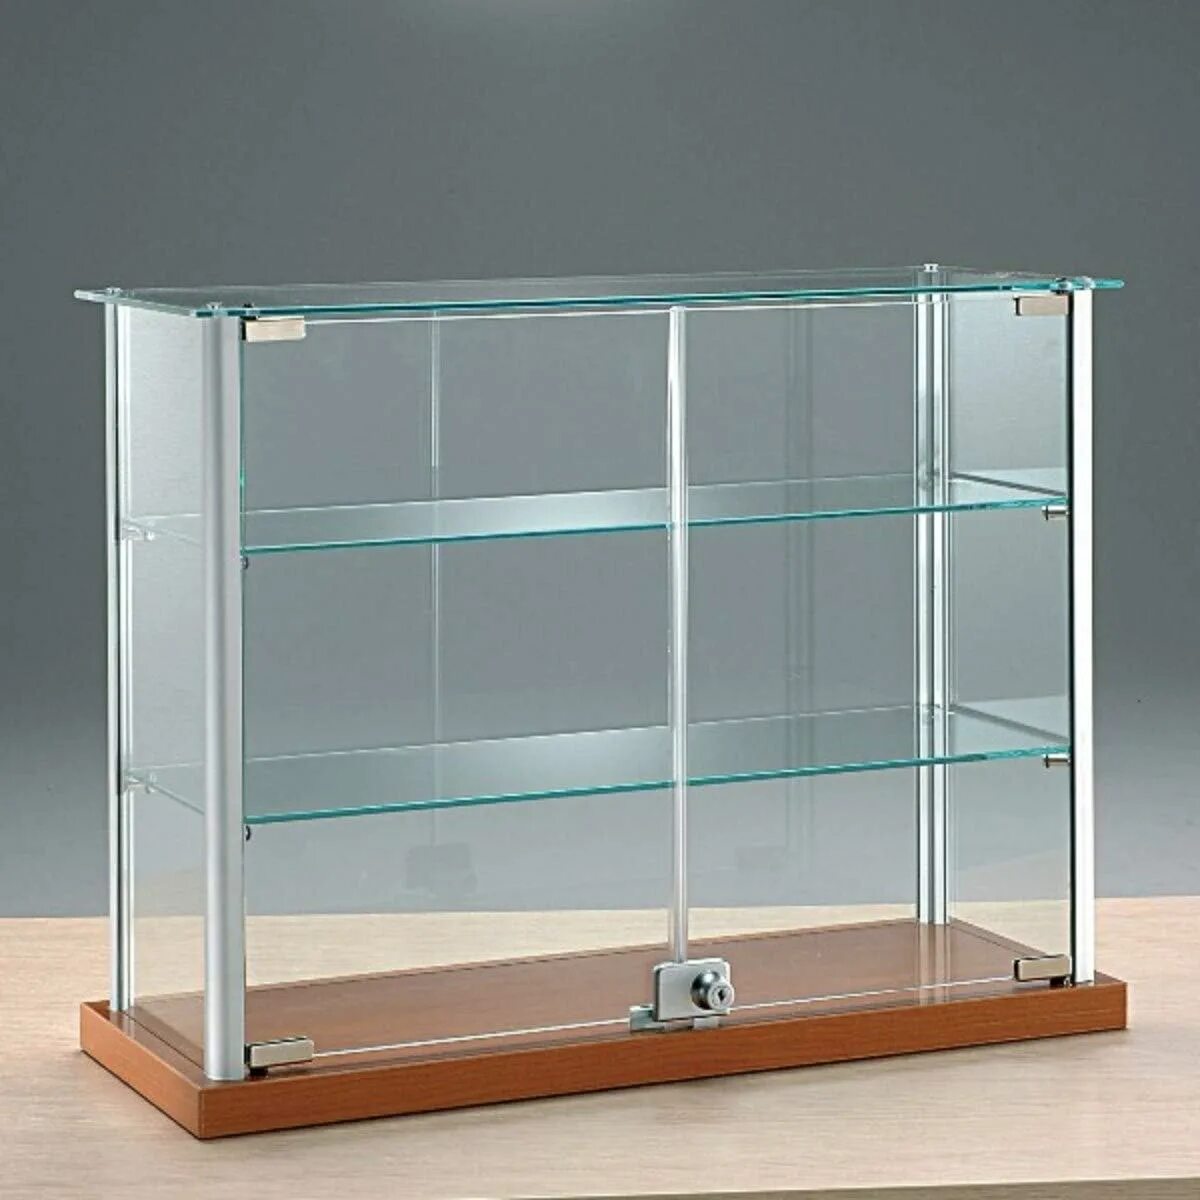 Витрина Glass Showcase h 1800. Витрина стеклянная 50#30. Витрина стеклянная "Saphir Noir". Витрина стеклянный полка